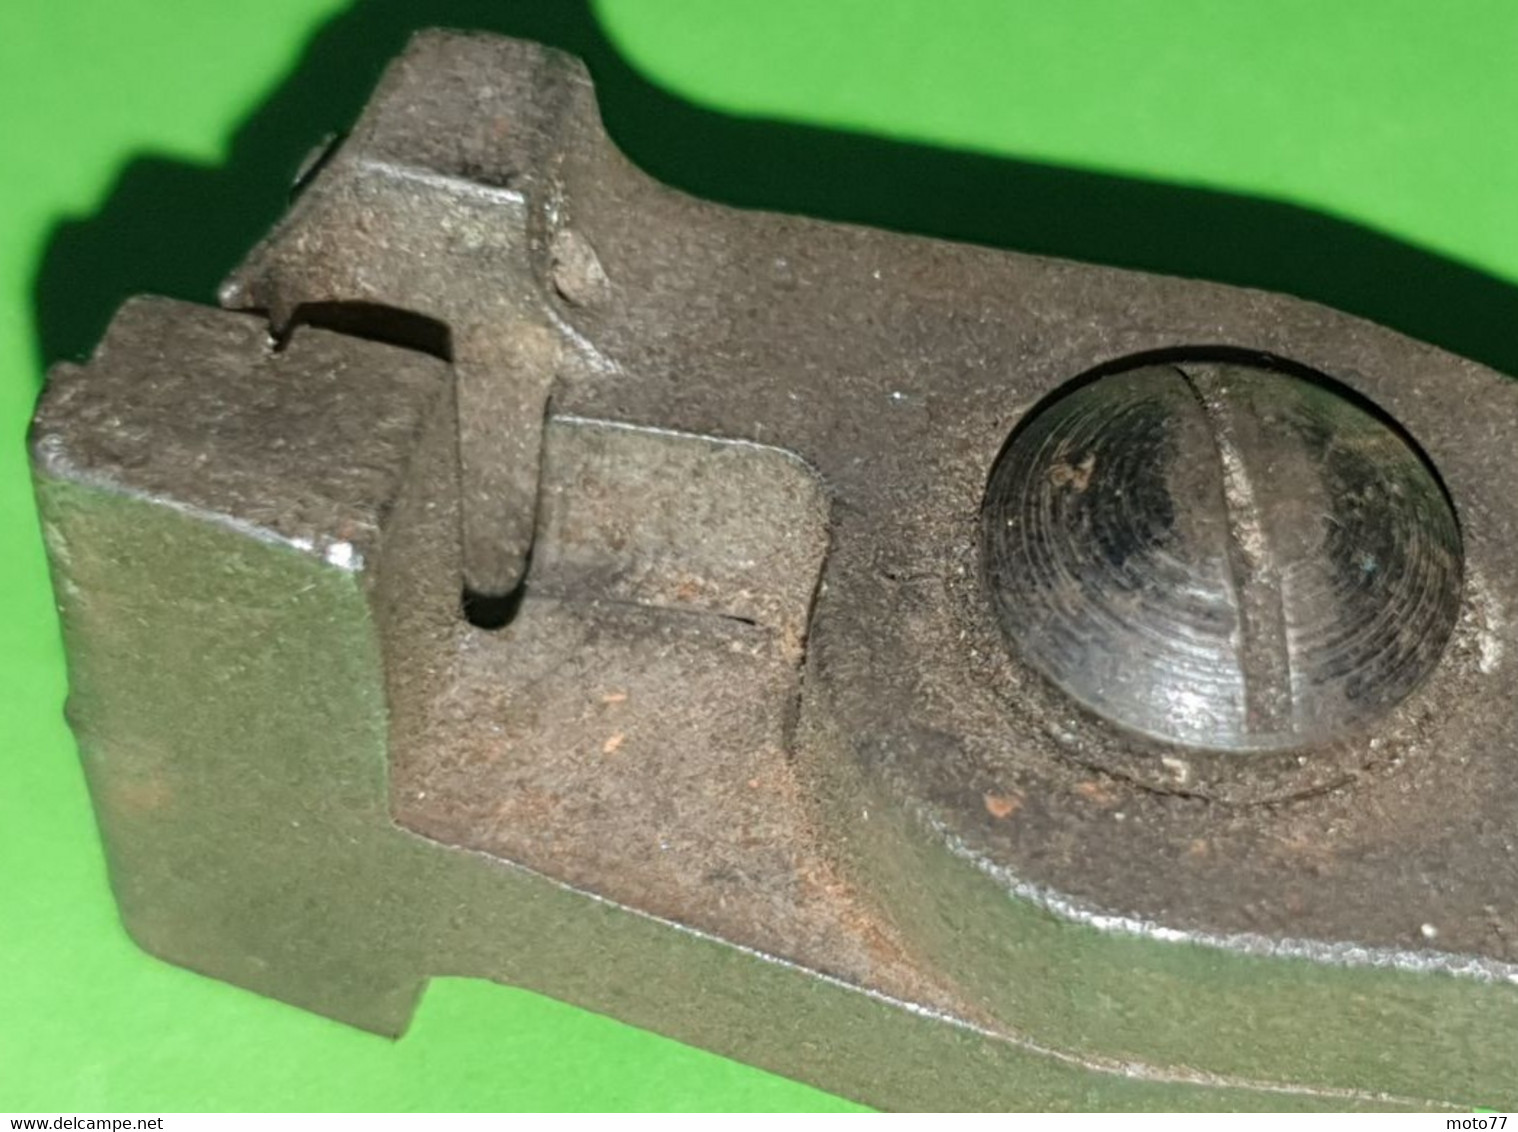 Ancien OUTIL spécial - PINCE d'éléctricien SES - acier et poignée plastique - "Laissé dans son jus"- vers 1940-1950